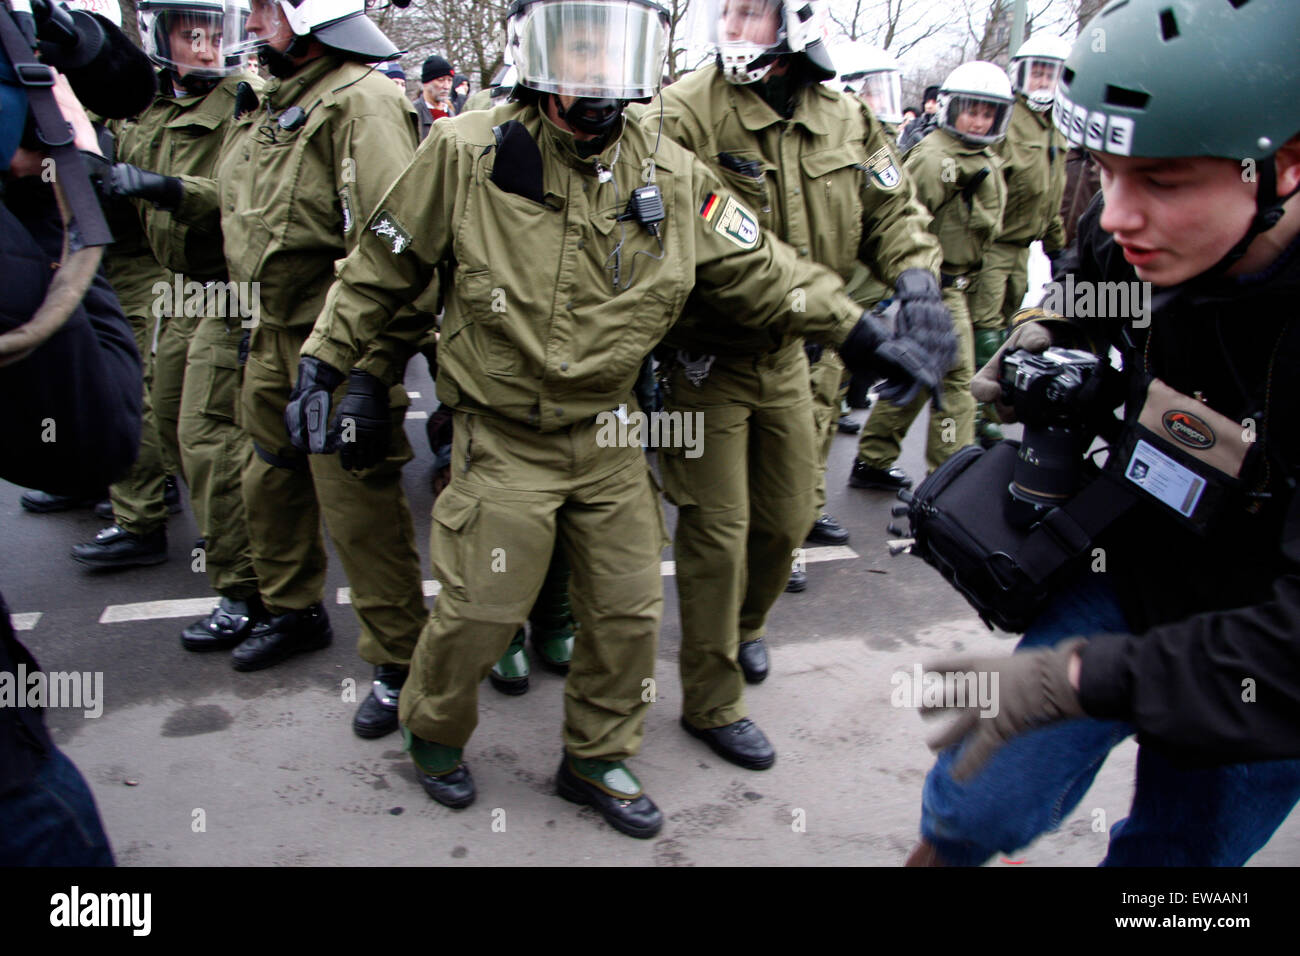 Polizisten nehmen einen Demonstranten fest - Impressionen von der Demonstration 'Wir zahlen nicht fuer Eure Krise', 28. Maerz 20 Stock Photo